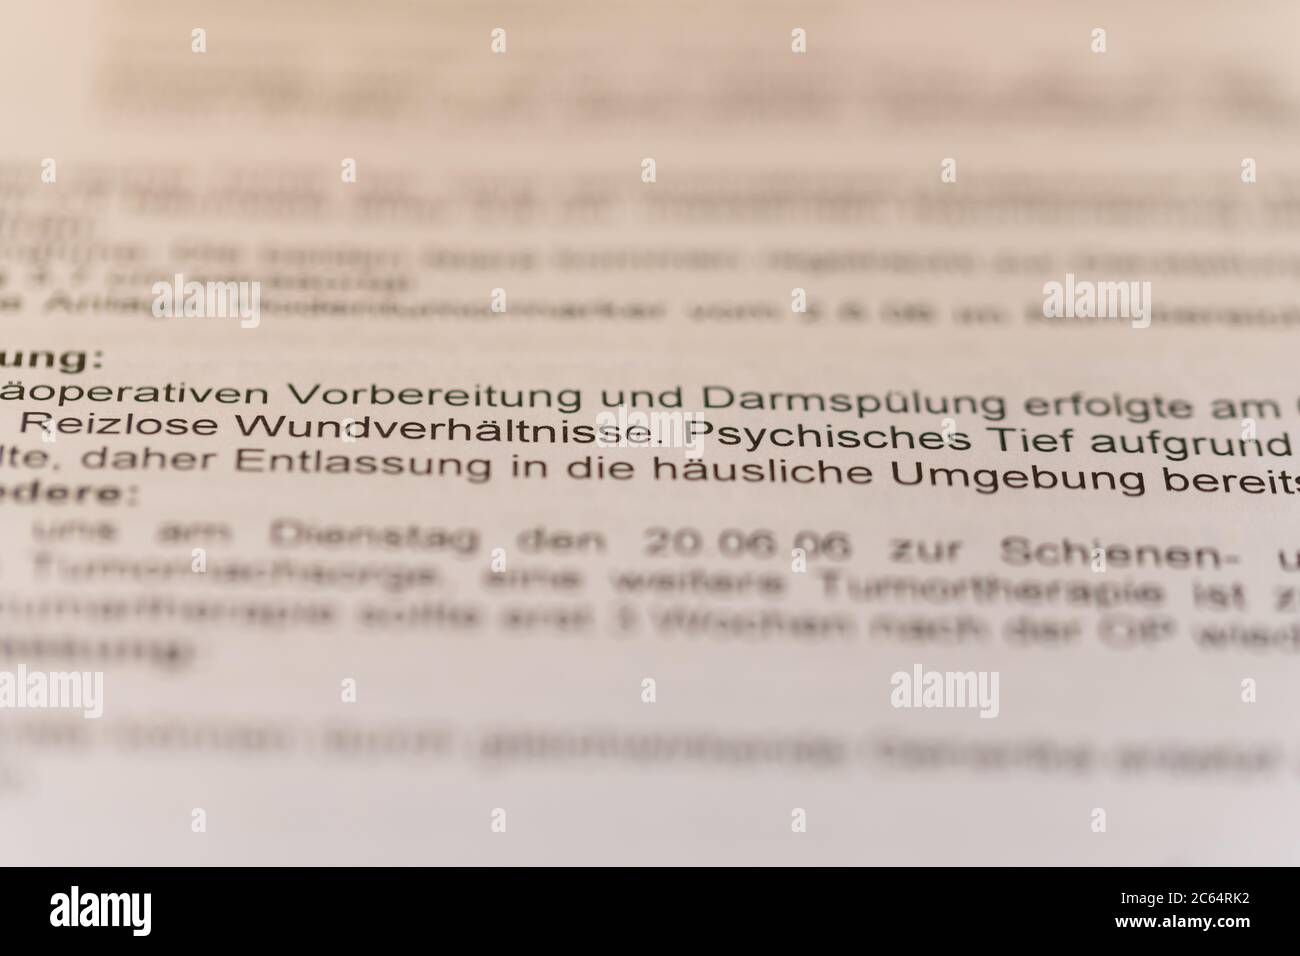 Hude, Germania, 7. Juli 2020: Fotos einer Ärztlichen ausführung über eine Krankheit des Patienten mit den Worden im Fokus Fischisches Ladro Foto Stock